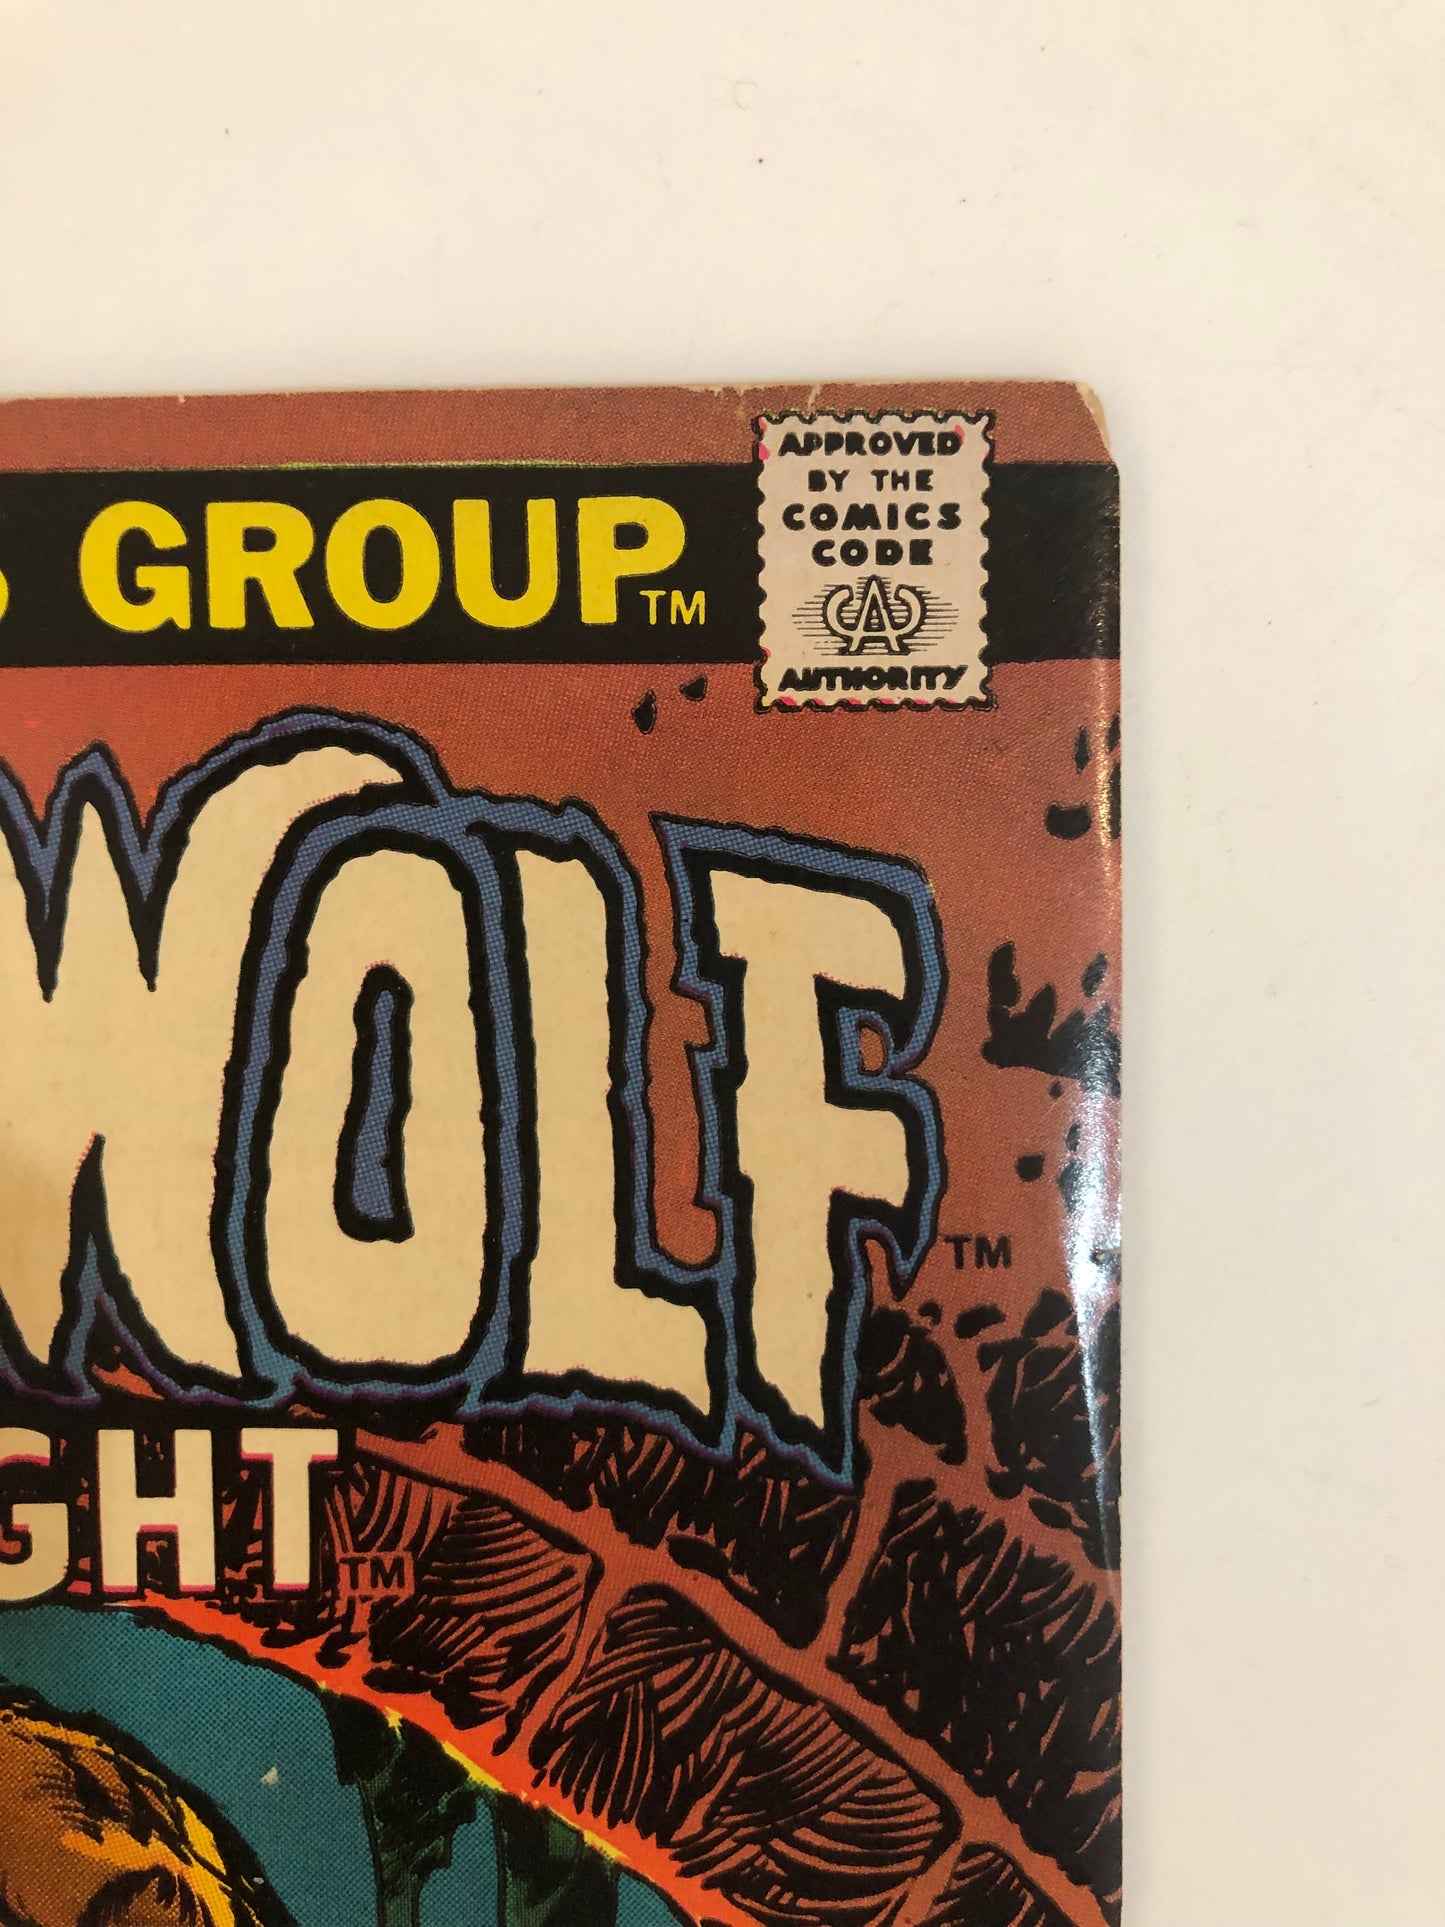 Werewolf By Night #13